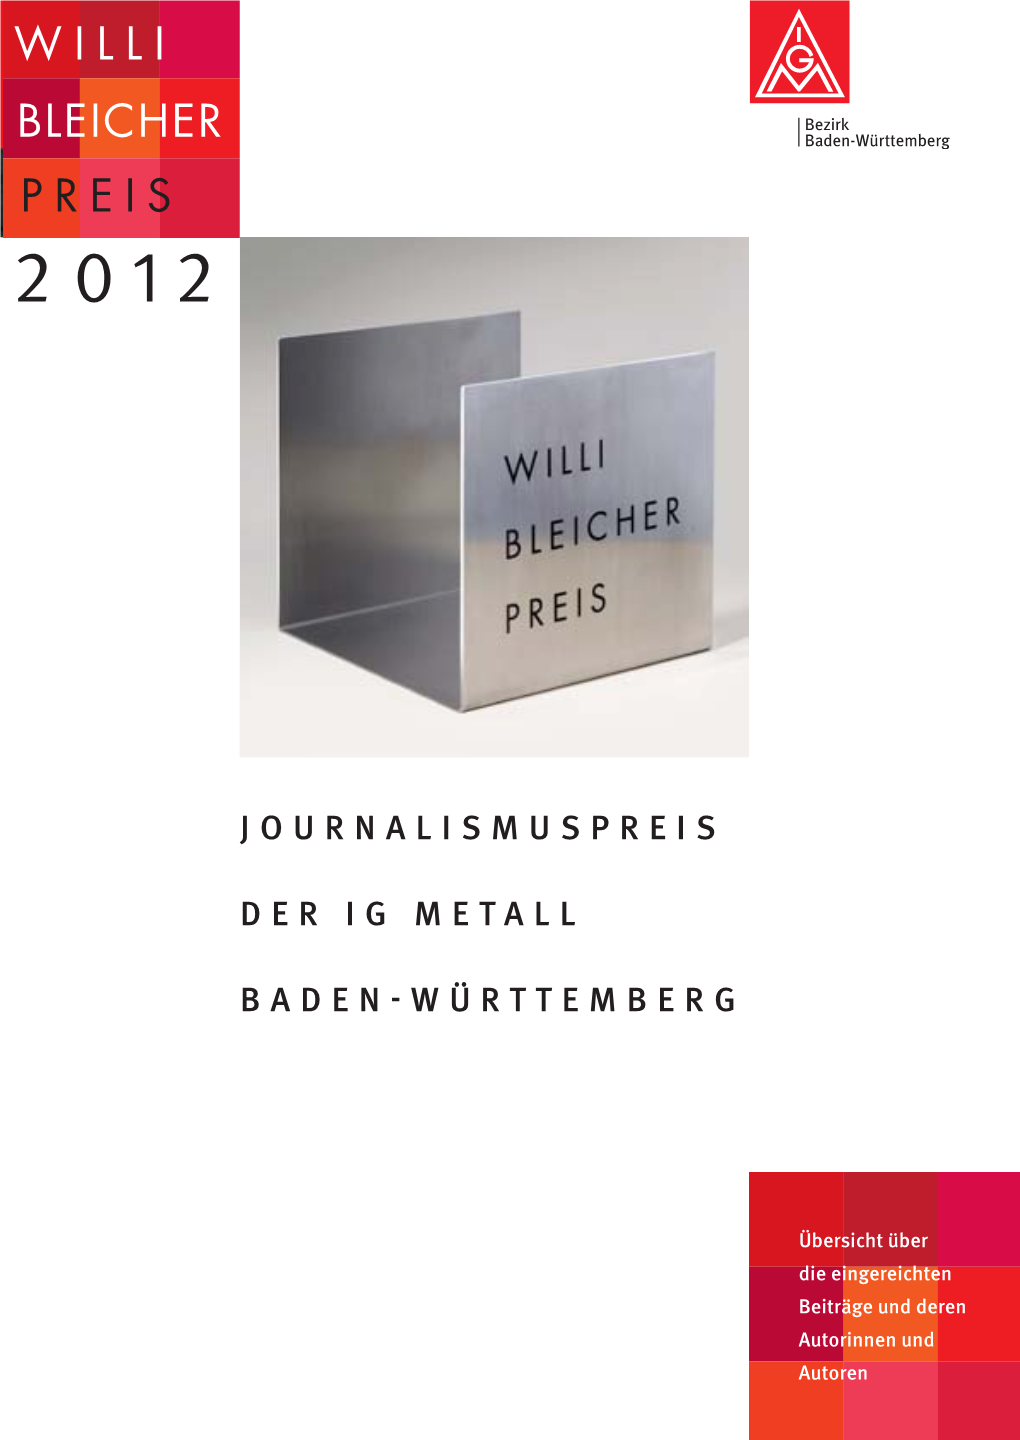 Willi-Bleicher-Preis 2012